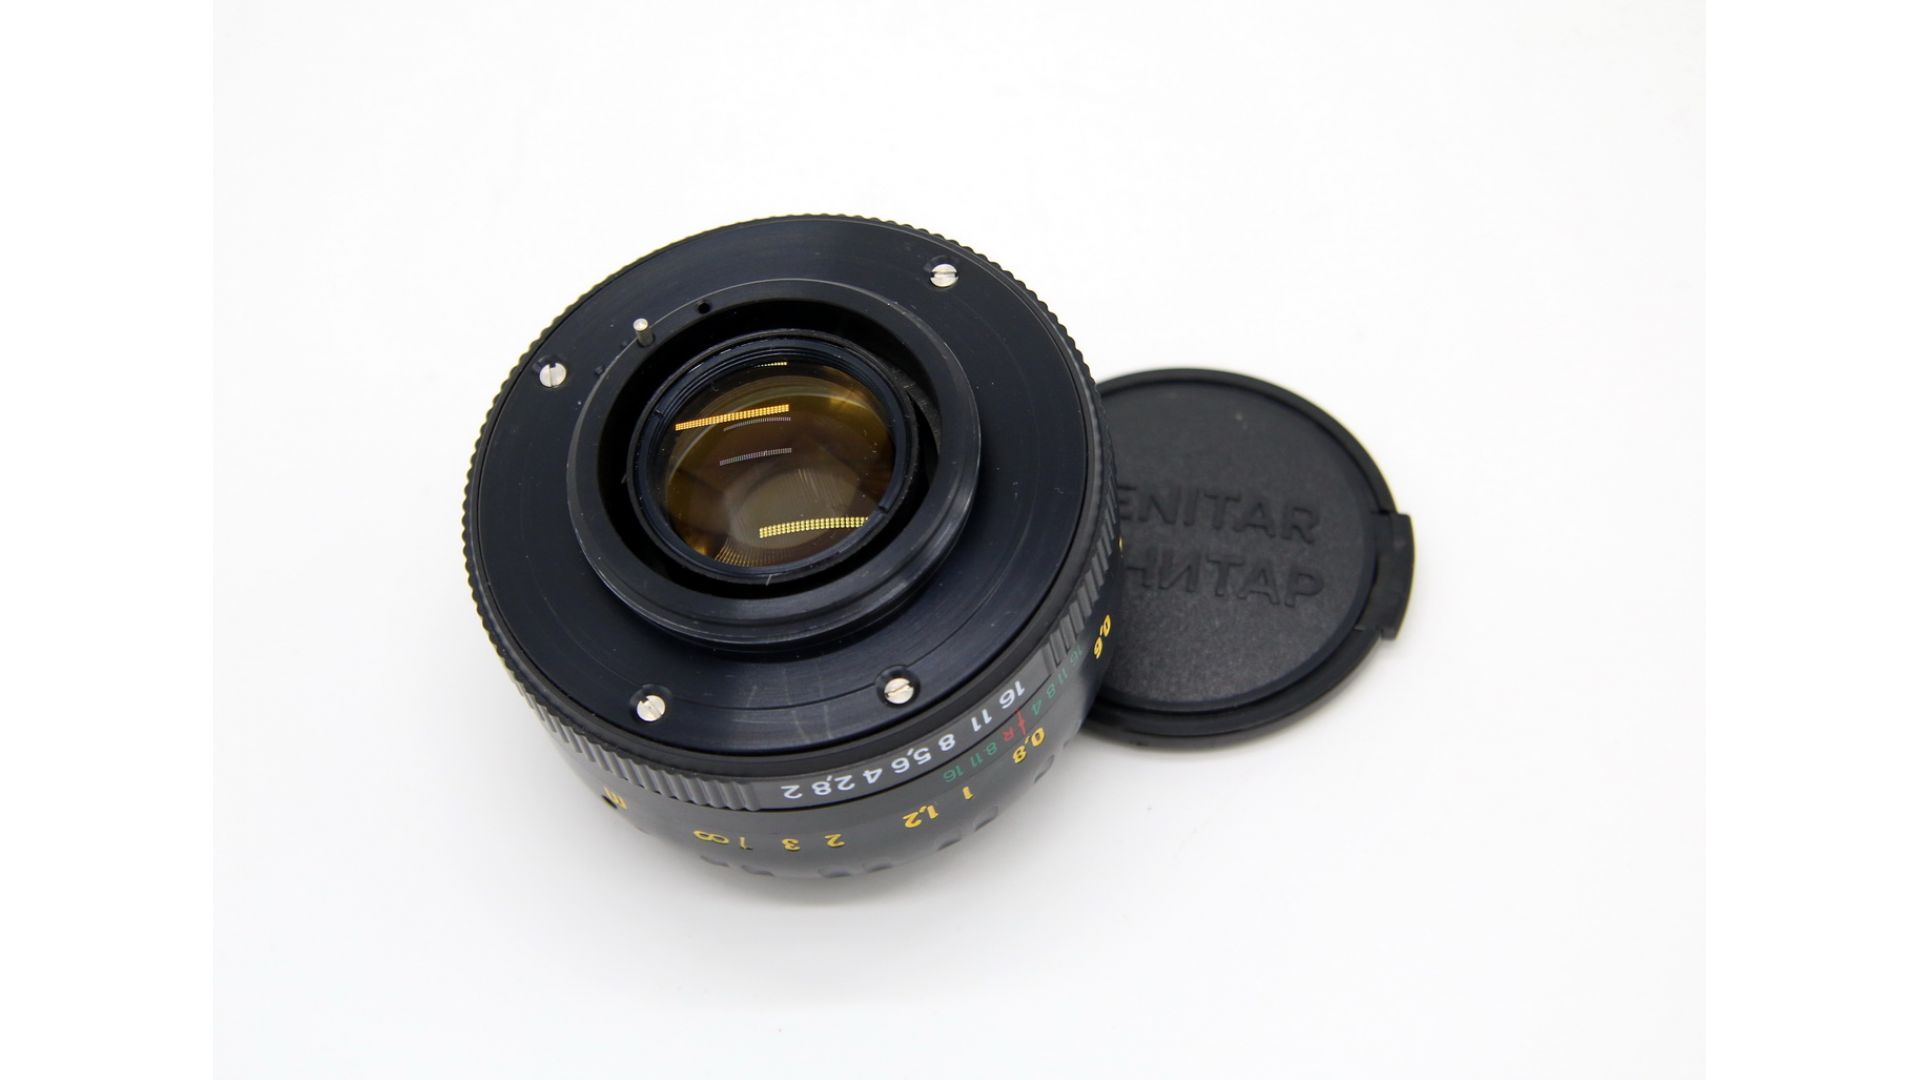 Мс s. Зенитар м2s 2/50. MC Zenitar-m2s 2/50. Объектив Зенитар 1,2/50s фото на полный Кадр на беззеркалке.